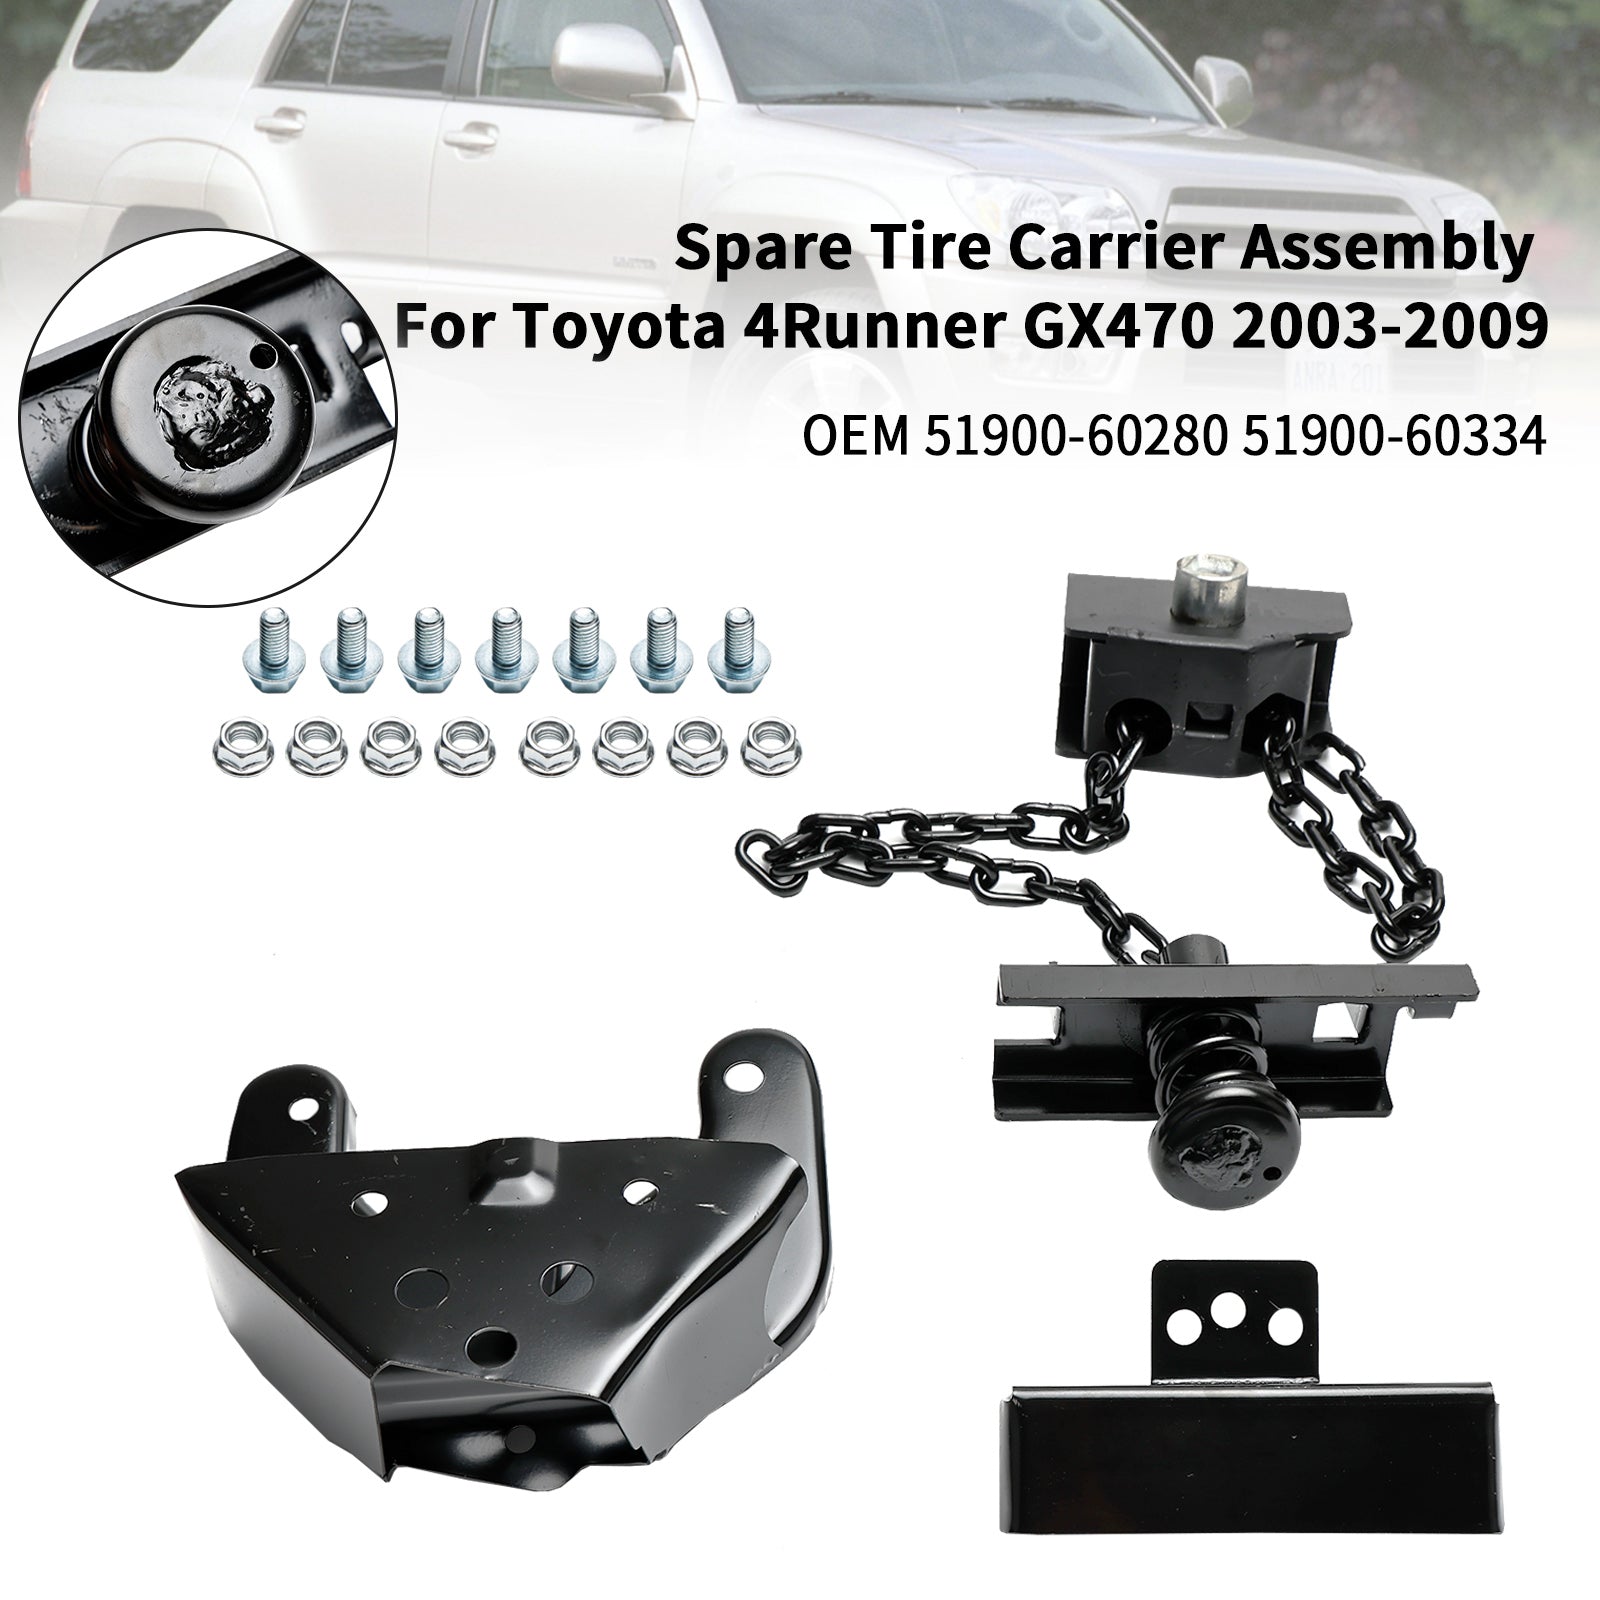 Toyota 4Runner GX470 2003-2009 Ensemble de support de pneu de secours 51900-60280 Fedex Express